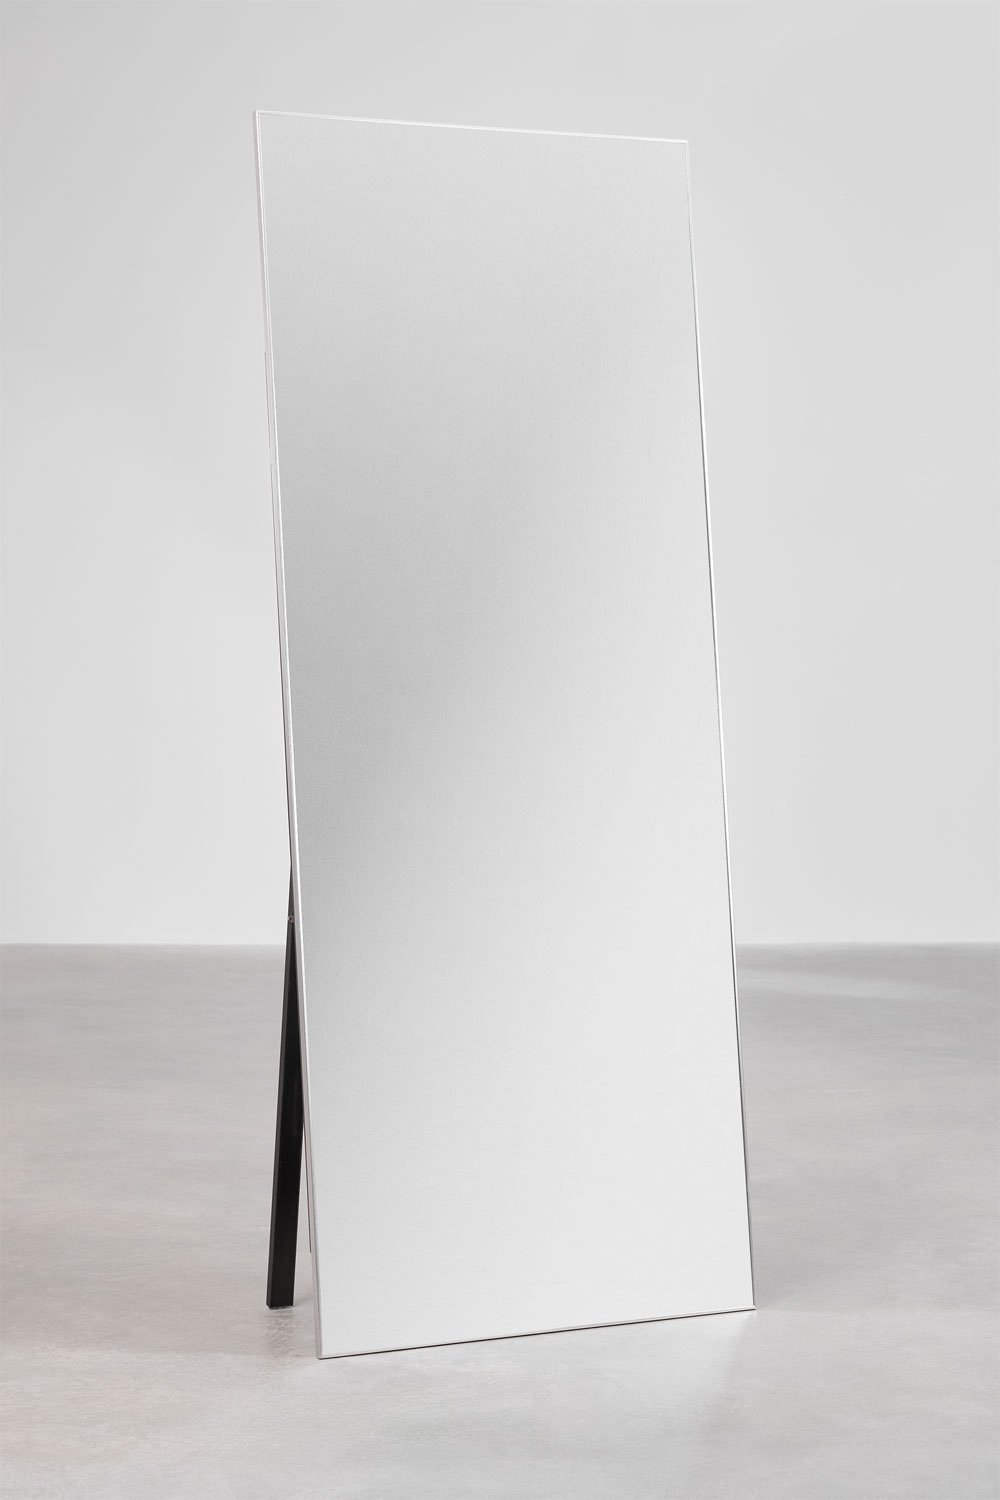 Specchio da terra rettangolare in alluminio (80x200 cm) Ondra, immagine della galleria 1